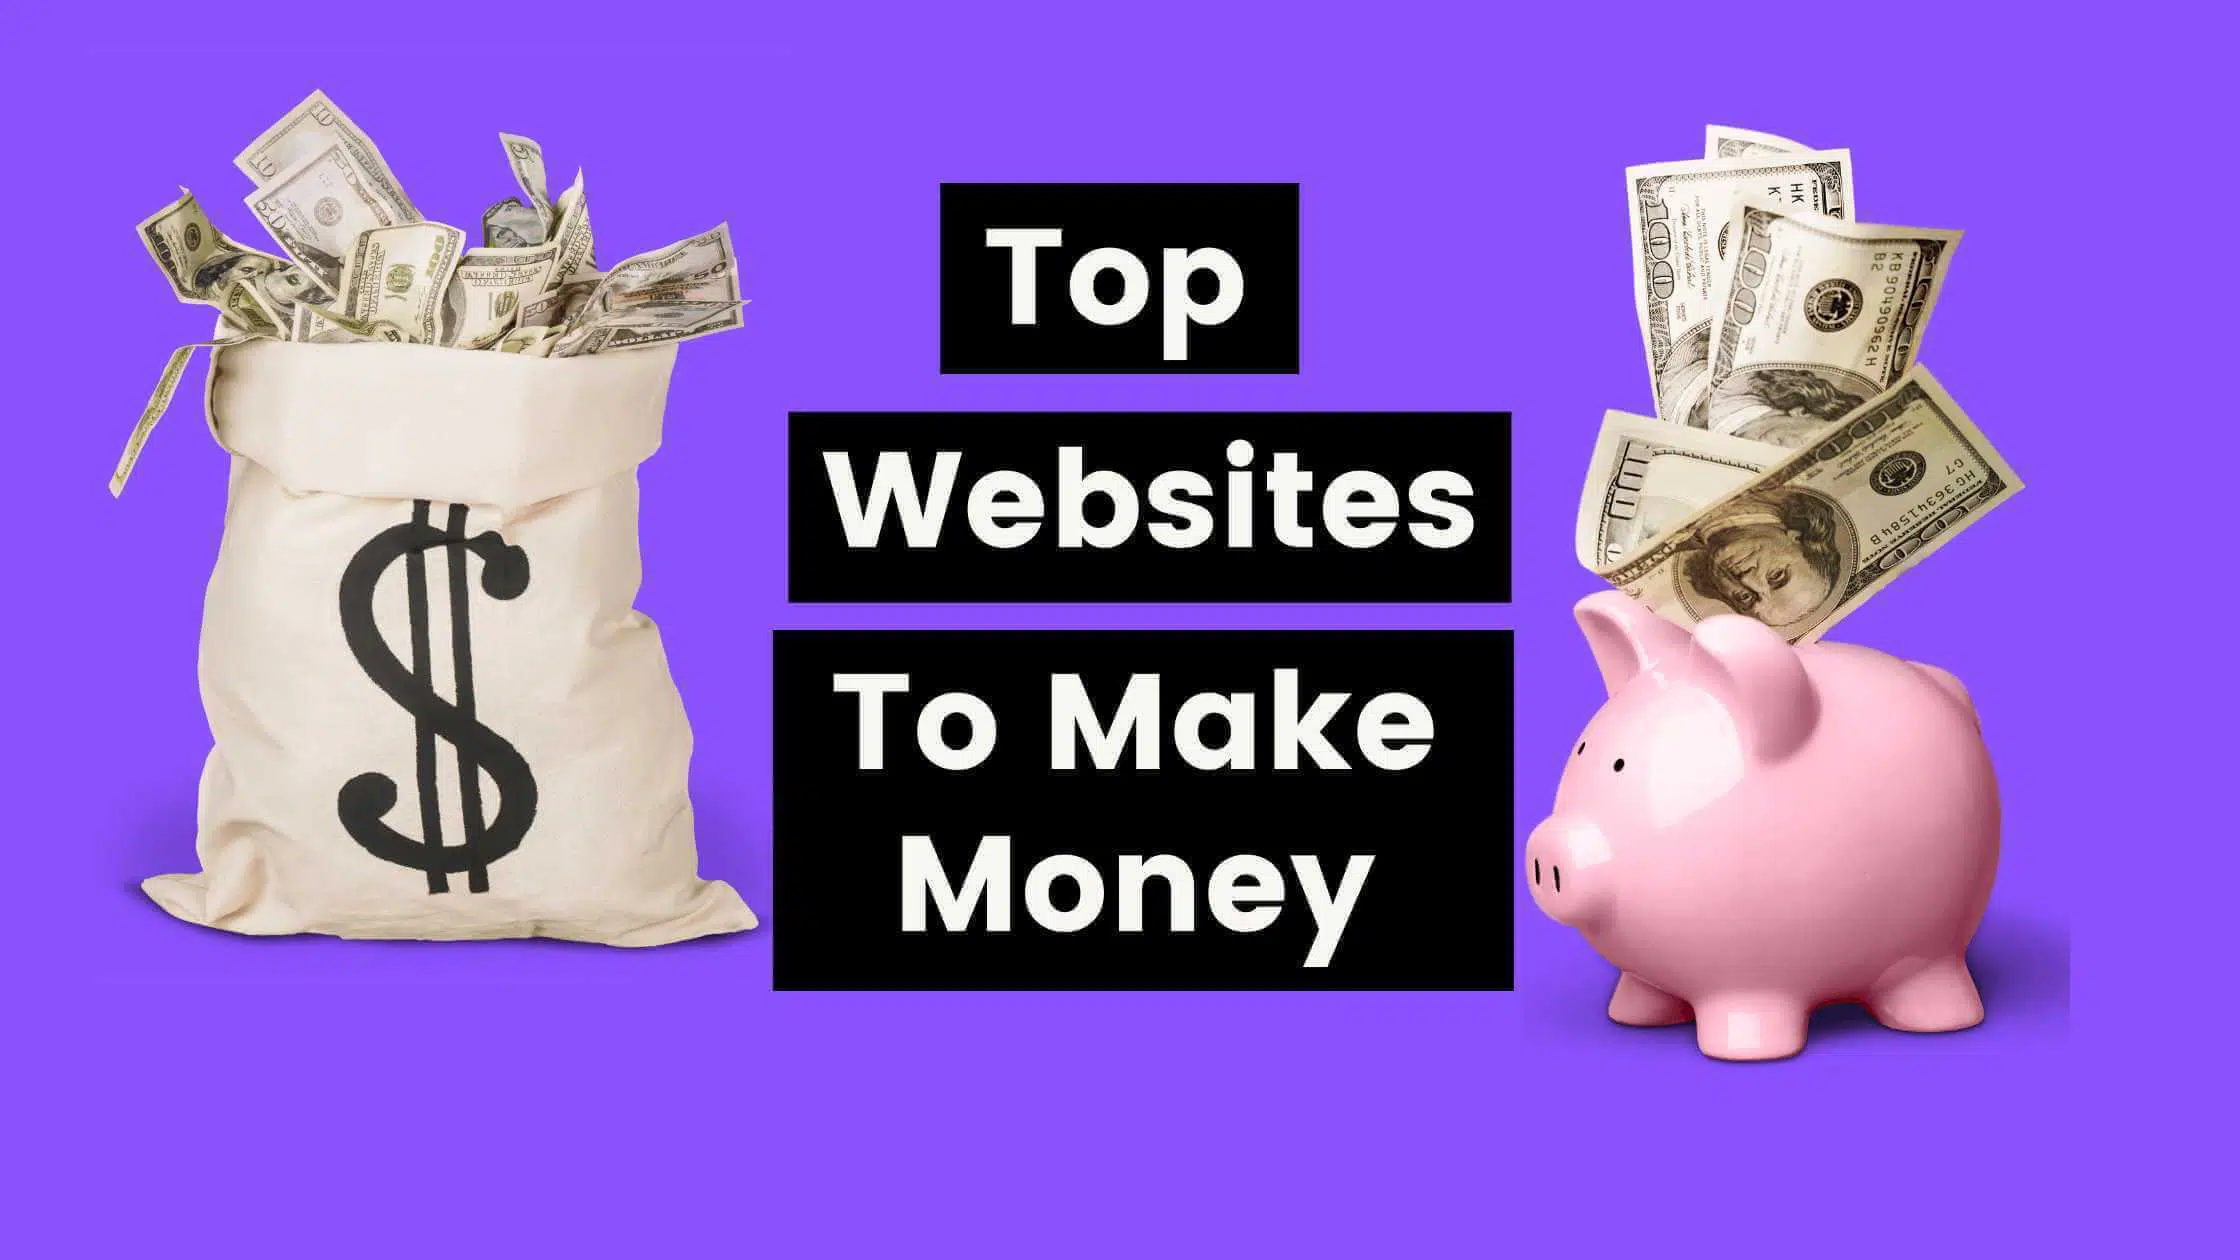 Top Websites To Make Money